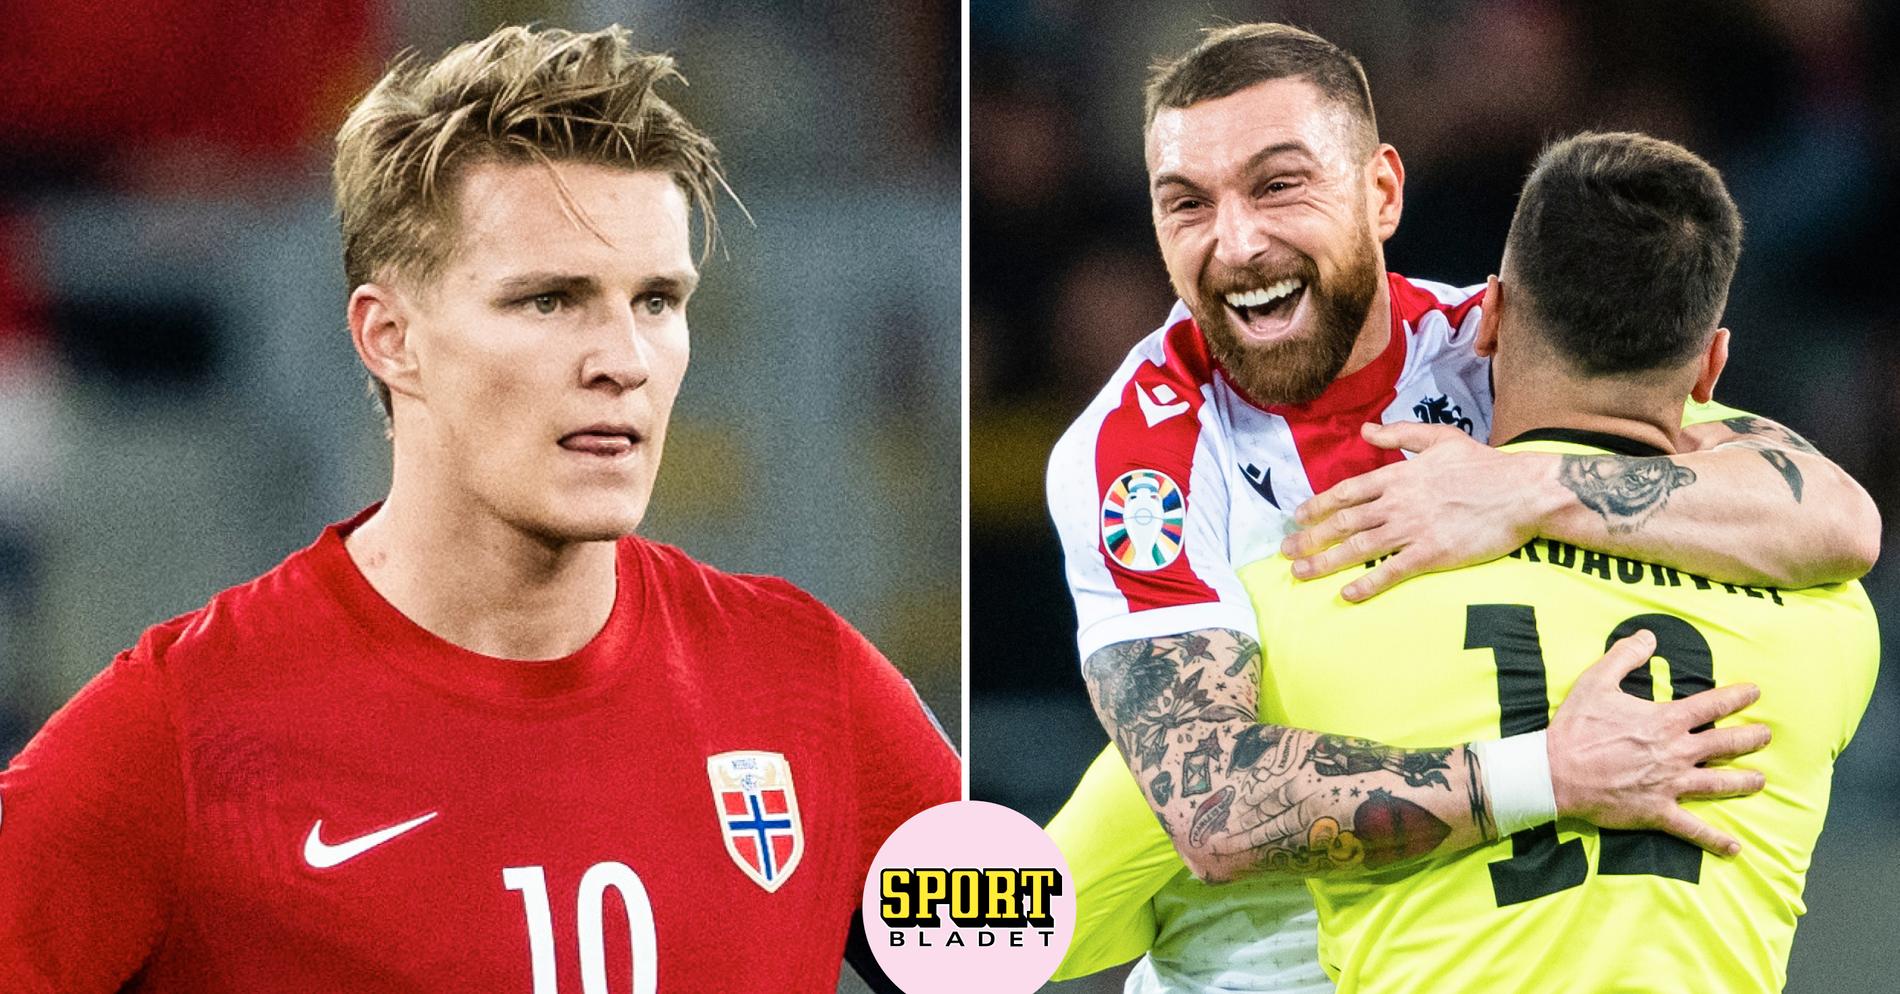 La Norvège a perdu contre la Géorgie – début fiasco des éliminatoires du Championnat d’Europe